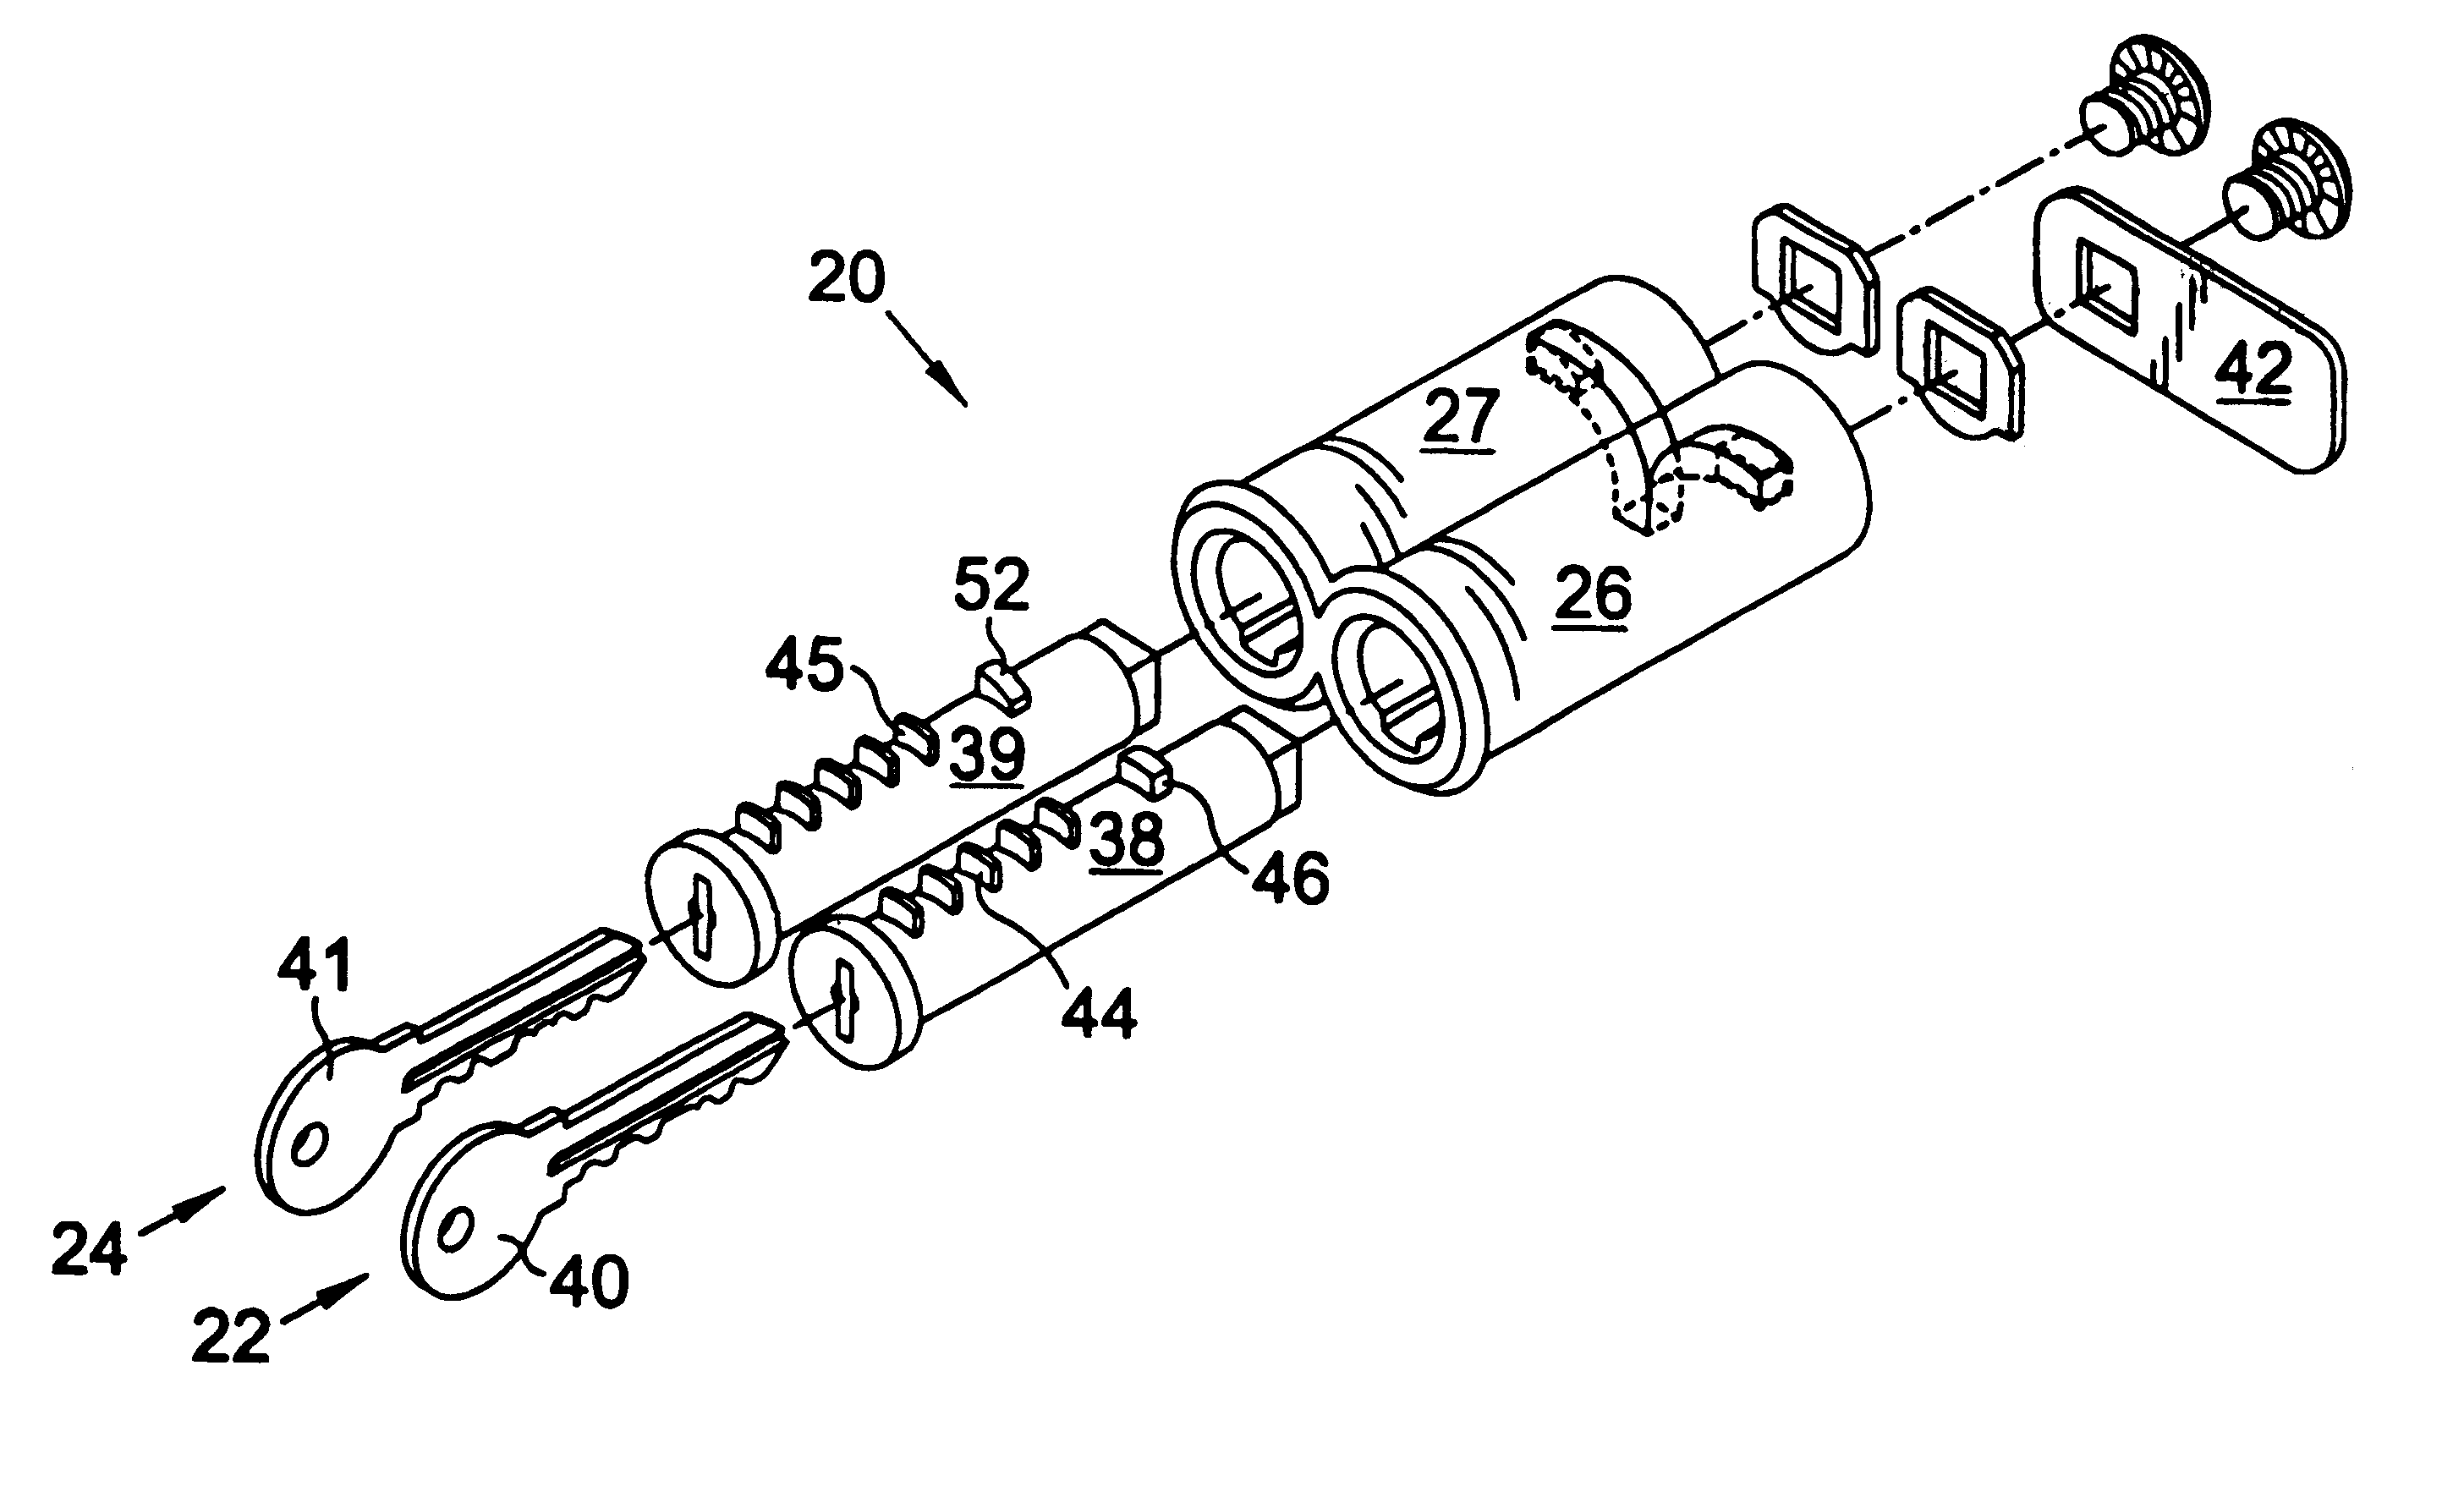 Key retaining lock apparatus